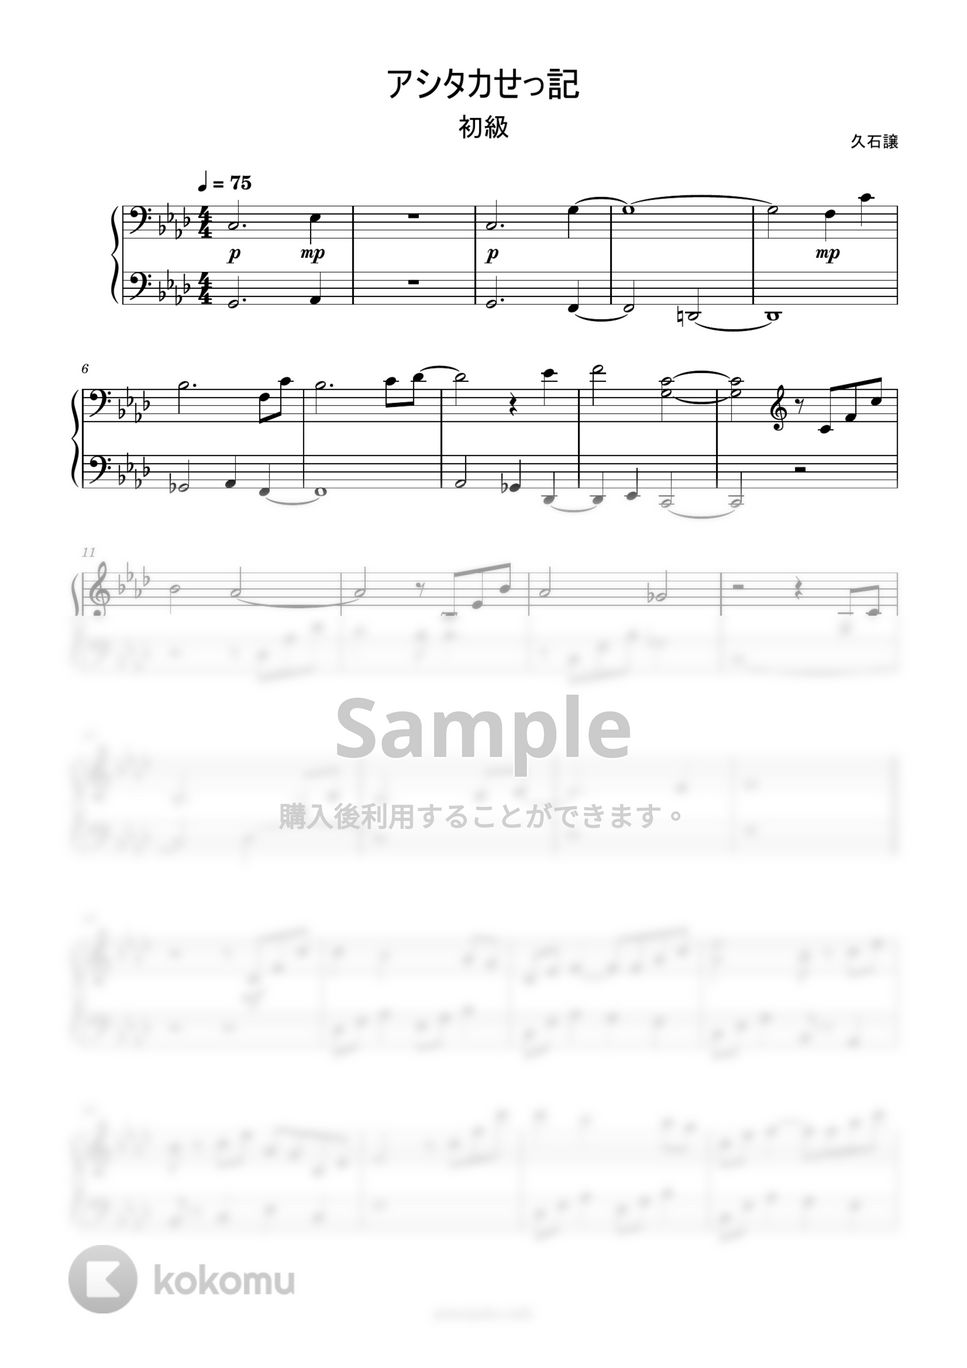 久石譲 - アシタカせっ記 (簡単楽譜) by ピアノ塾